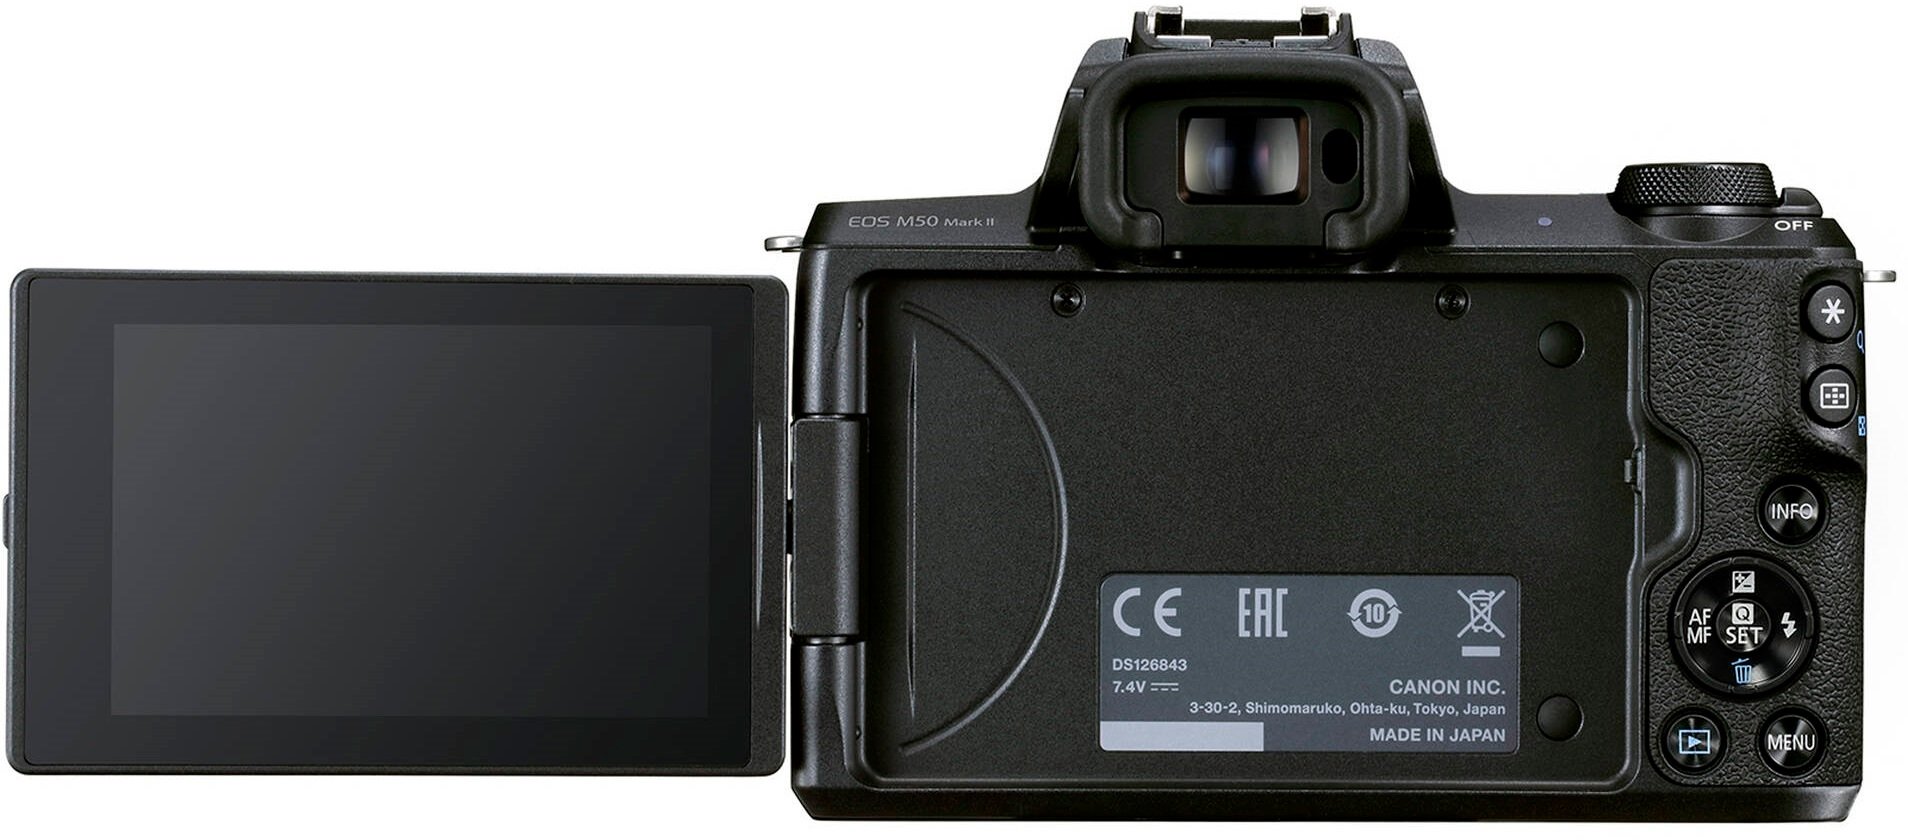 Canon EOS M50 Mark II kit 18-150